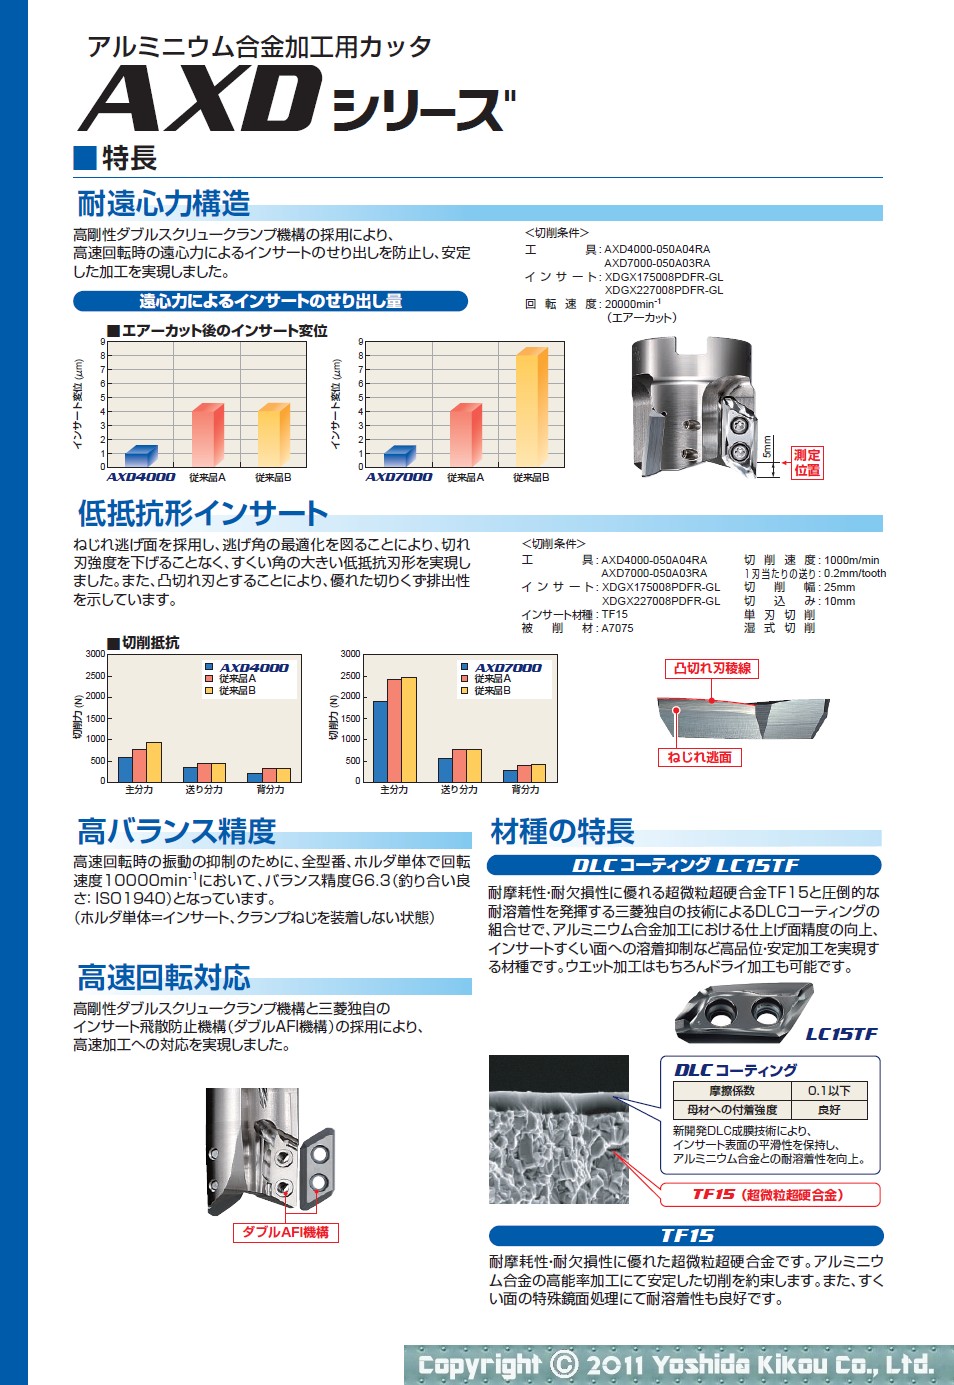 吉田機工株式会社 Yoshida Kikou Co.,Ltd. アルミニウム合金加工用カッタ「AXDシリーズ」